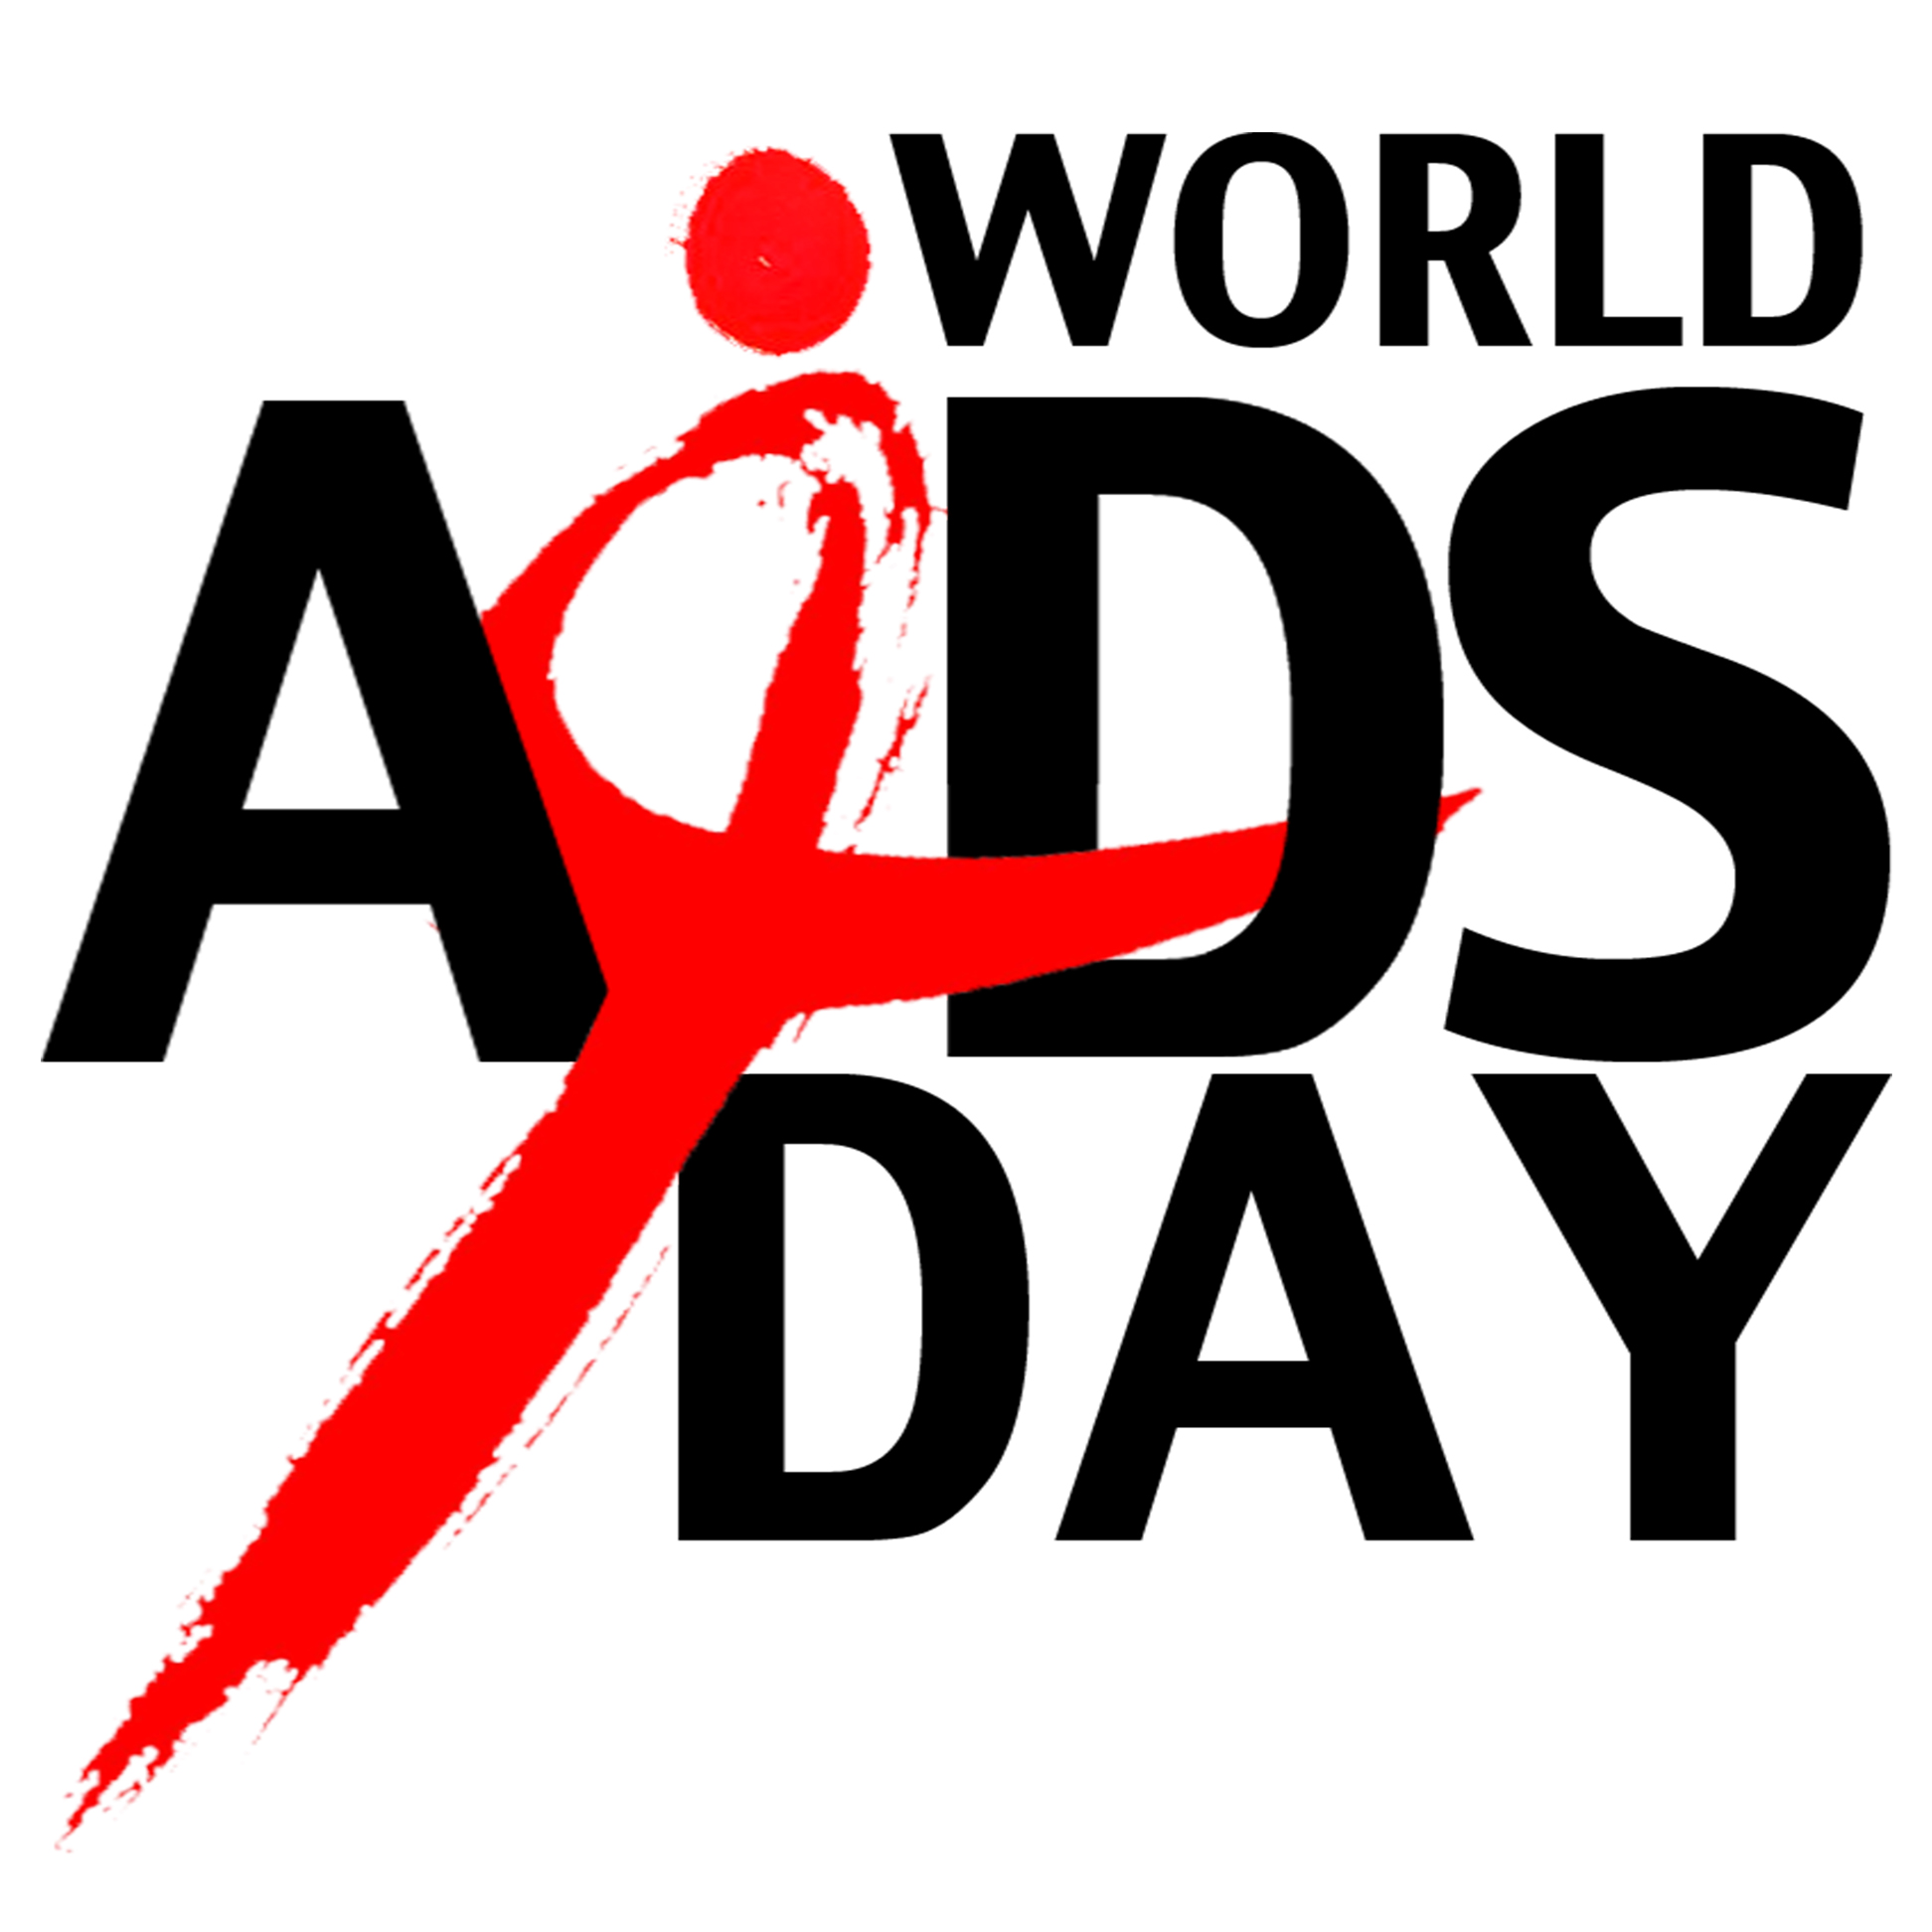 विश्व एड्स दिवस मैसेज, SMS, कोट्स, स्टेटस